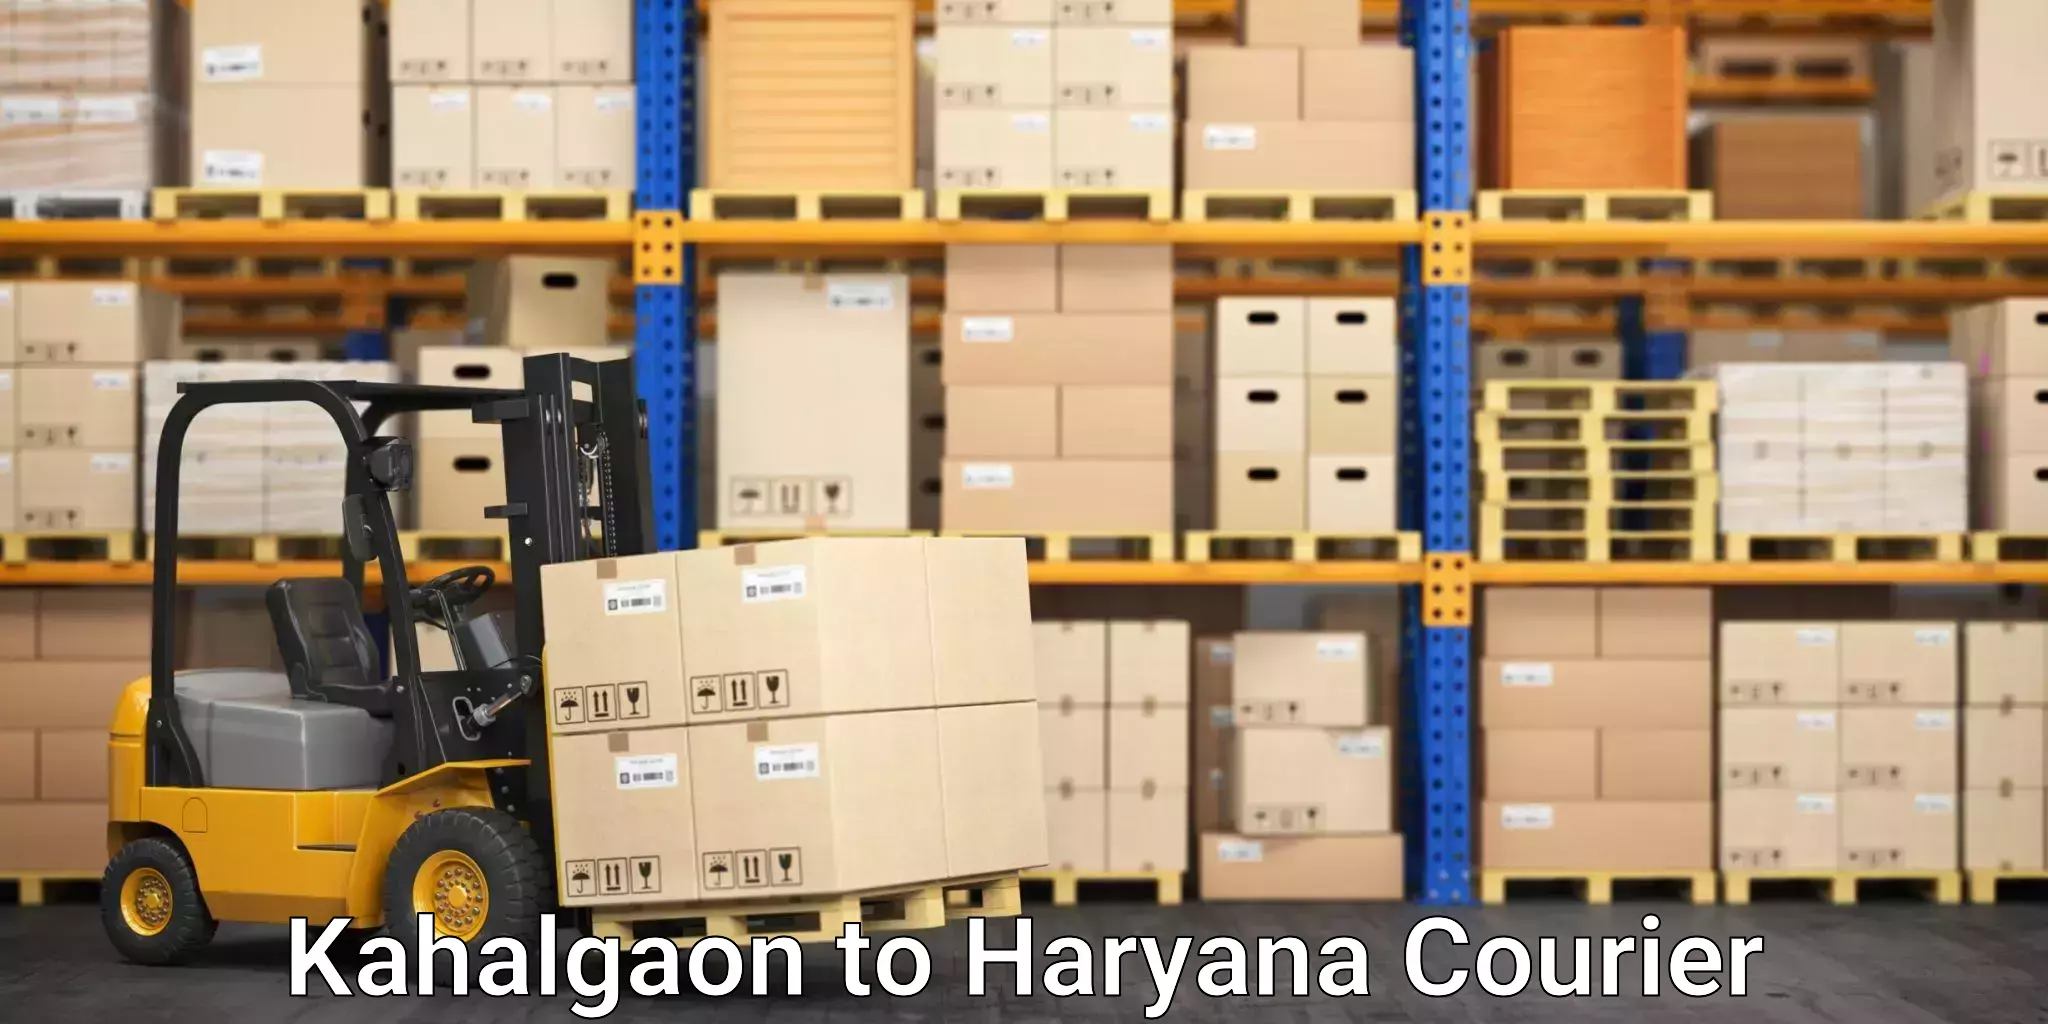 Professional moving company Kahalgaon to Haryana